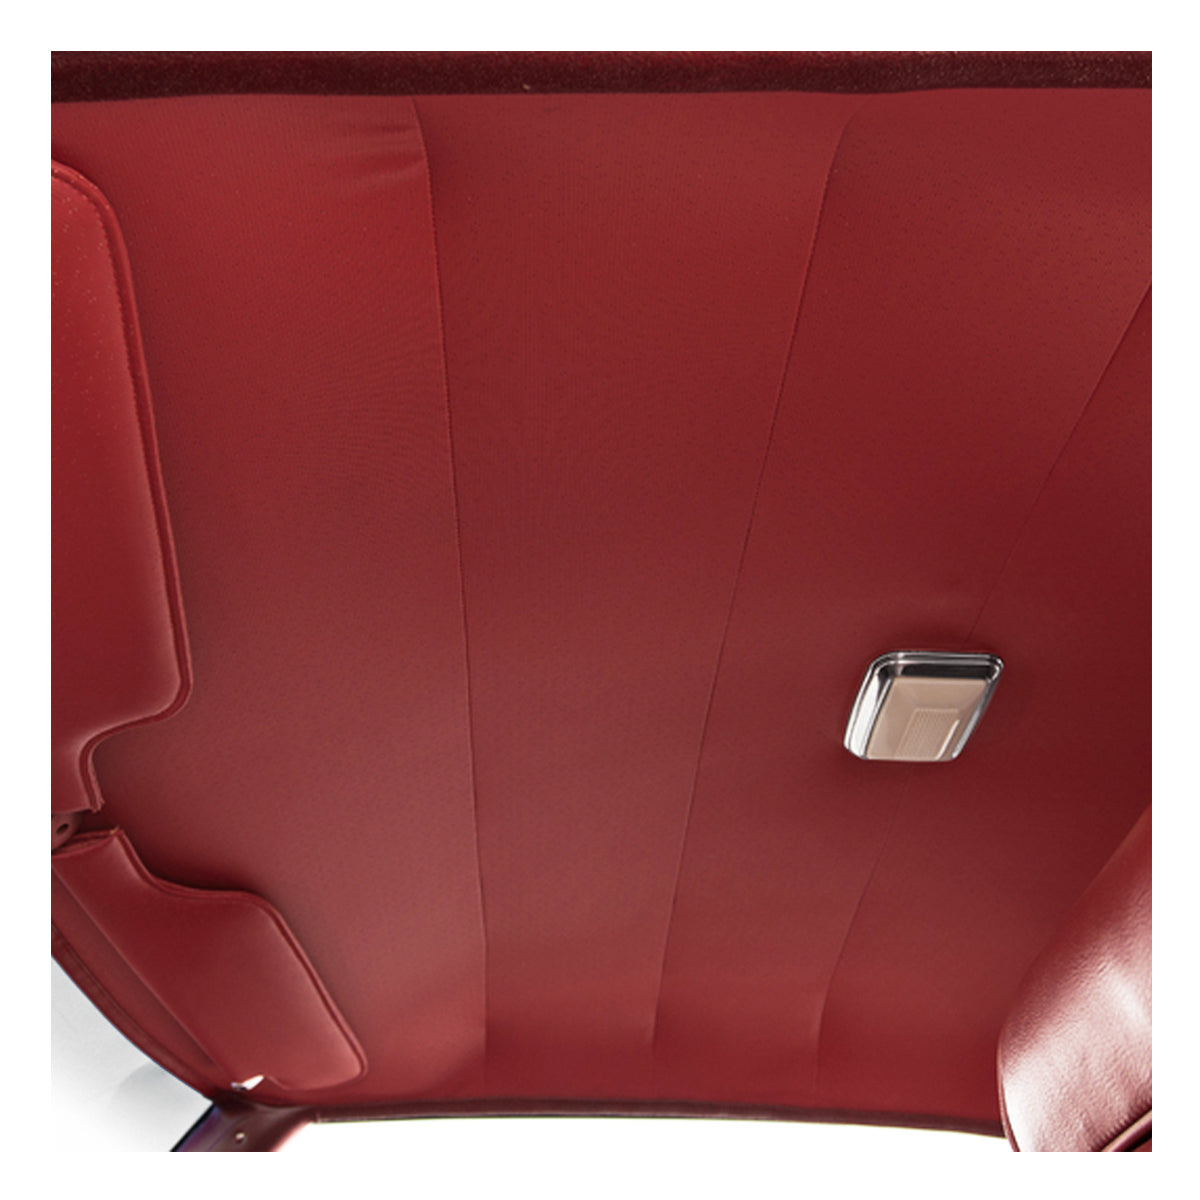 68/69 AUTO CARPET - RED LOOP – Legendary Auto Interiors